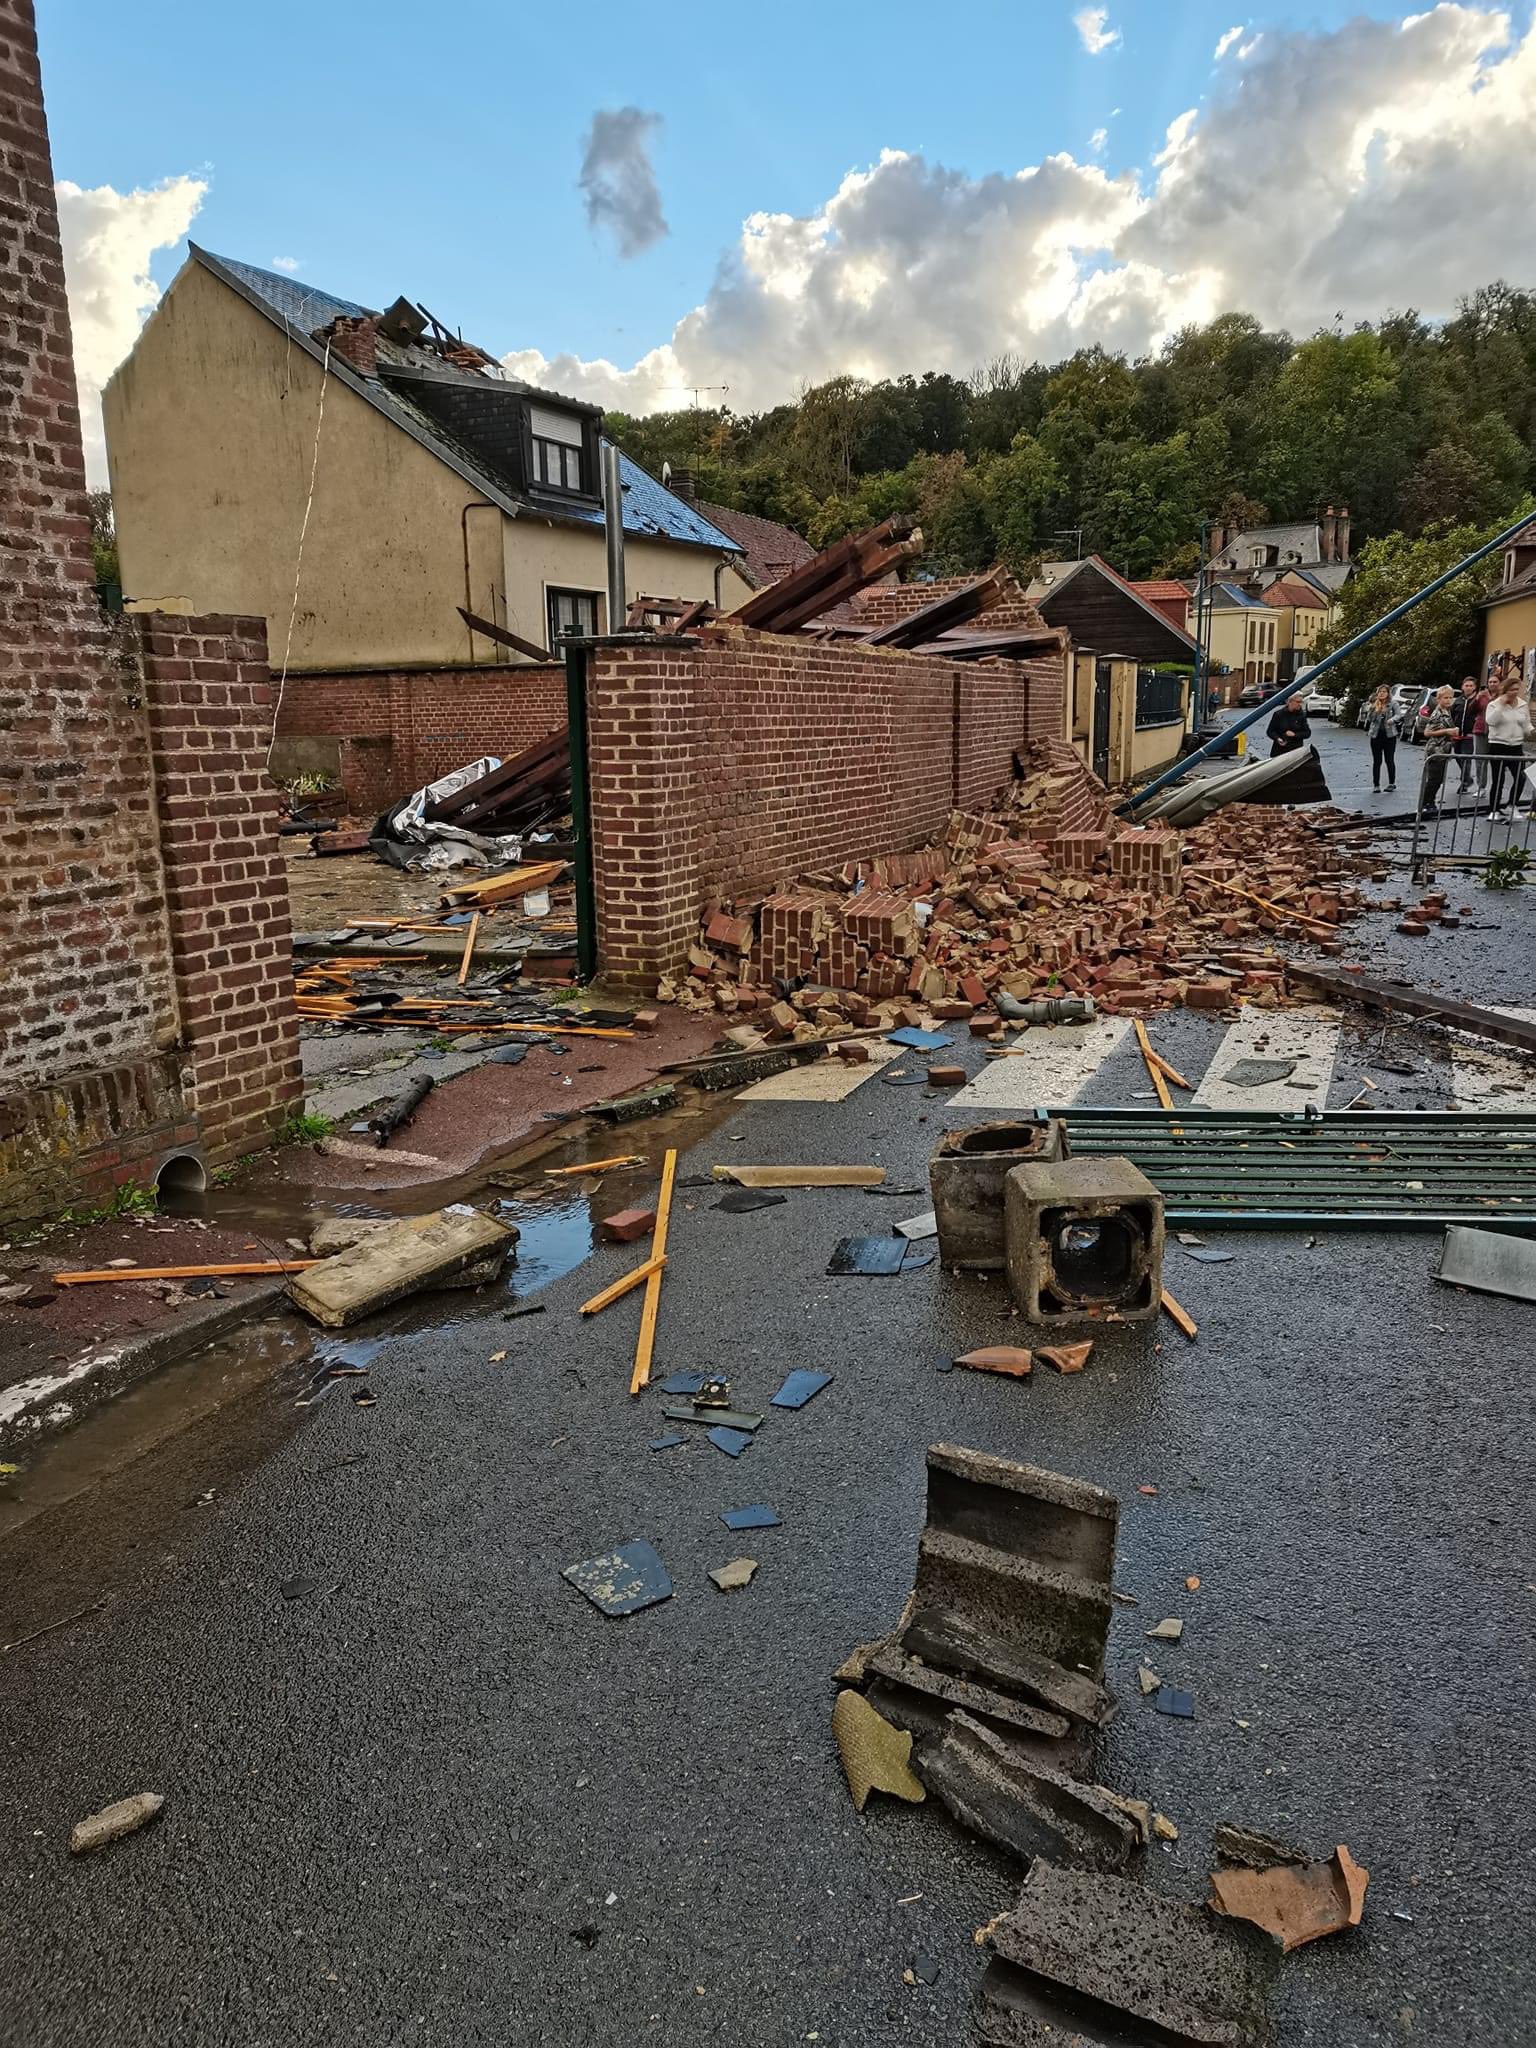 Les dégâts dans la petite commune de Conty, dans la Somme, sont impressionnants selon les photos publiées par les habitants sur les réseaux sociaux. (Capture d'écran Facebook)